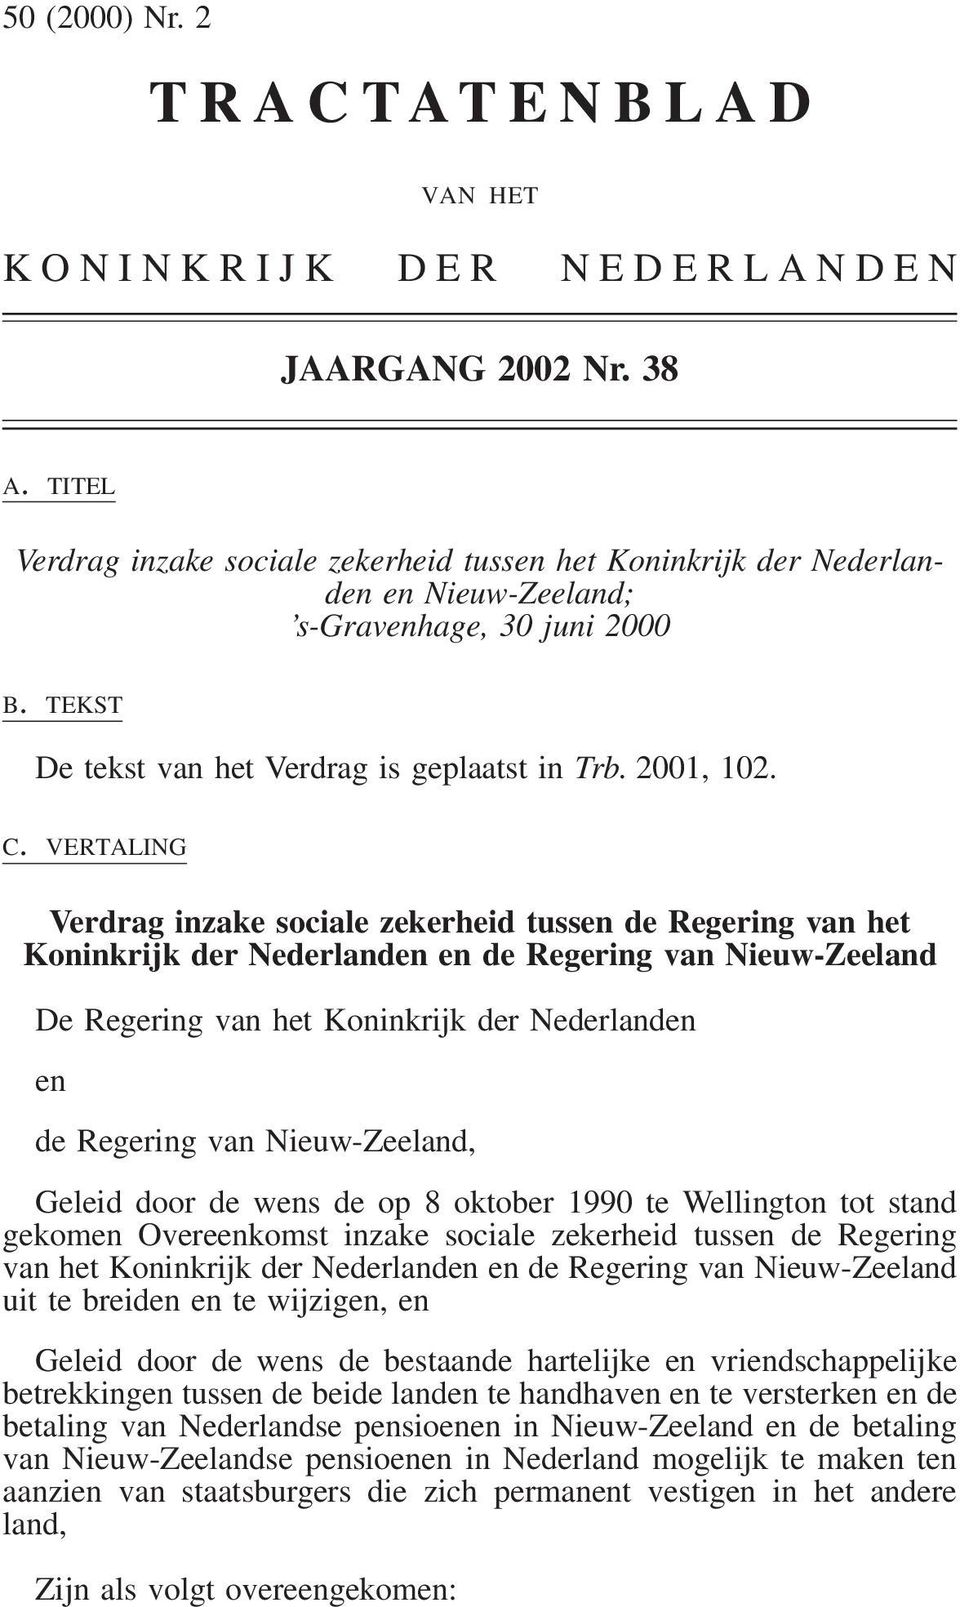 VERTALING Verdrag inzake sociale zekerheid tussen de Regering van het Koninkrijk der Nederlanden en de Regering van Nieuw-Zeeland De Regering van het Koninkrijk der Nederlanden en de Regering van